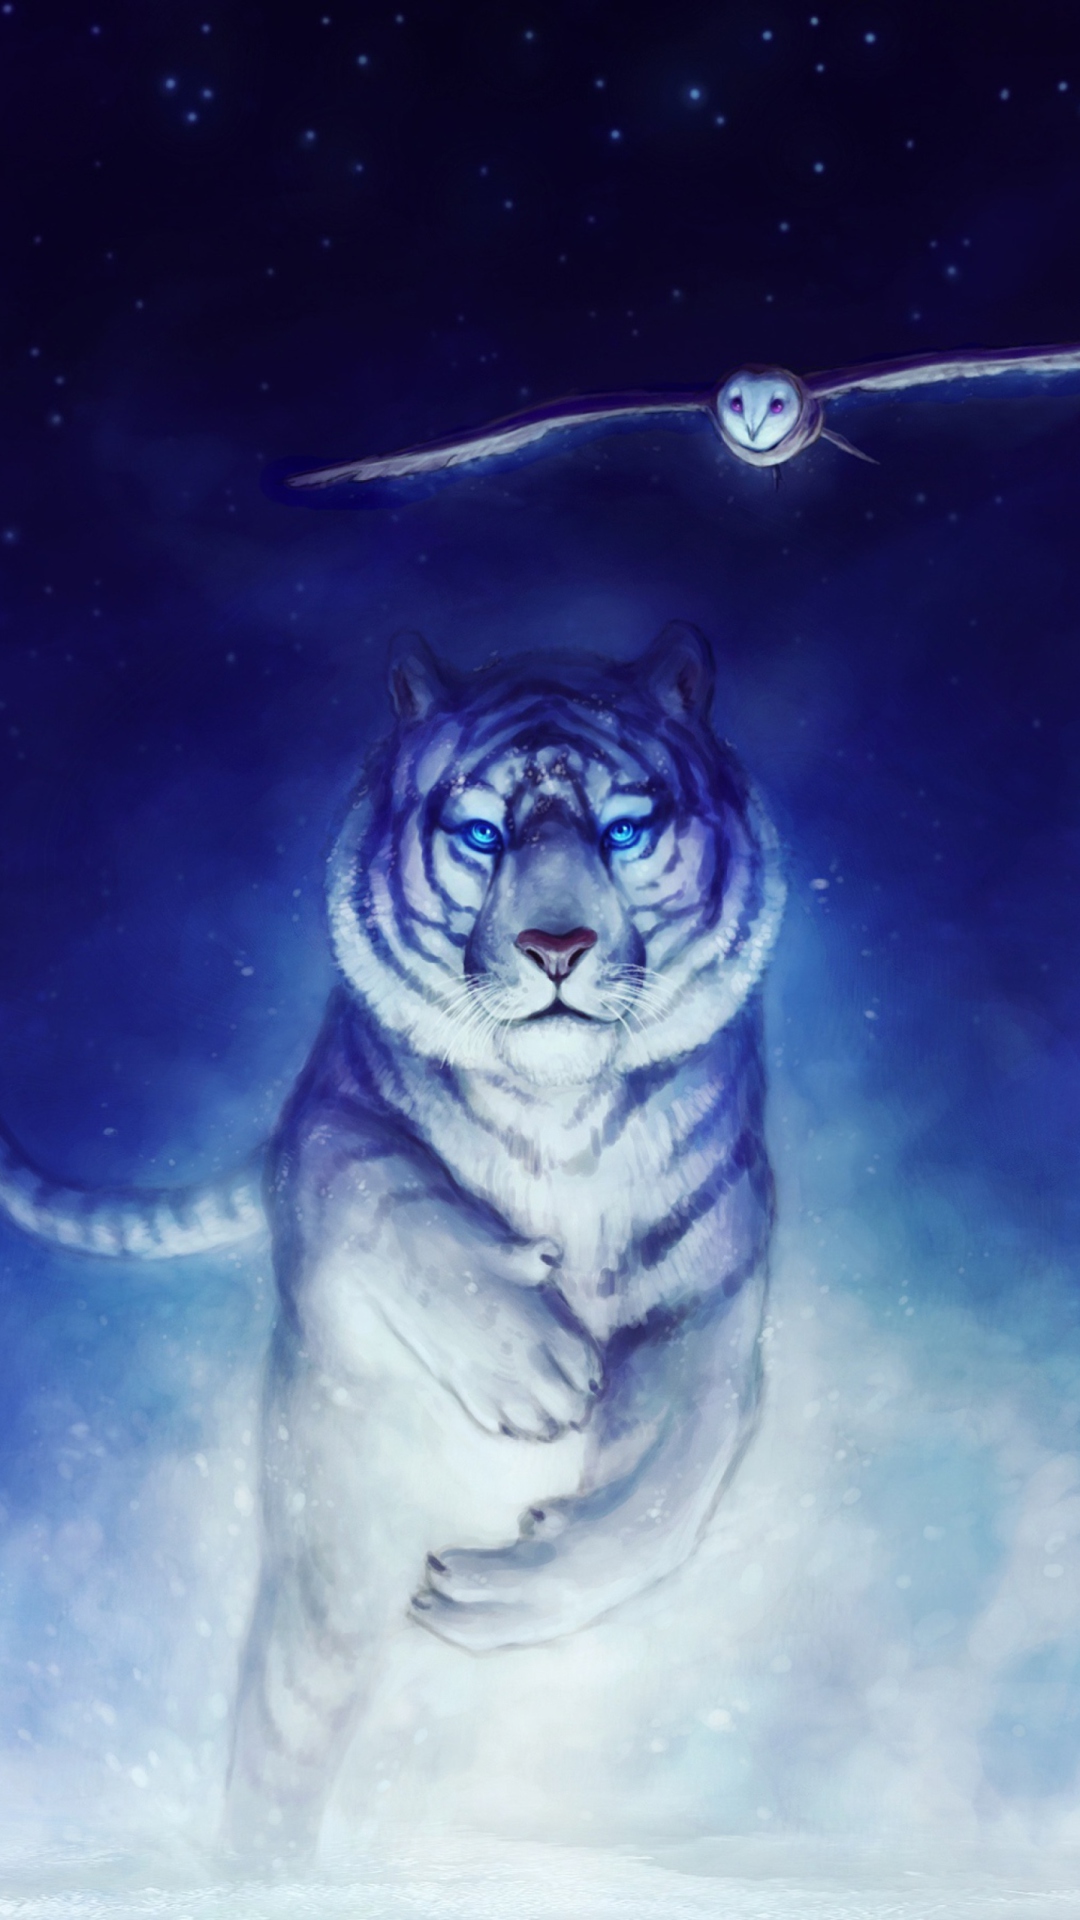 Tiger & Owl Art wallpaper 1080x1920